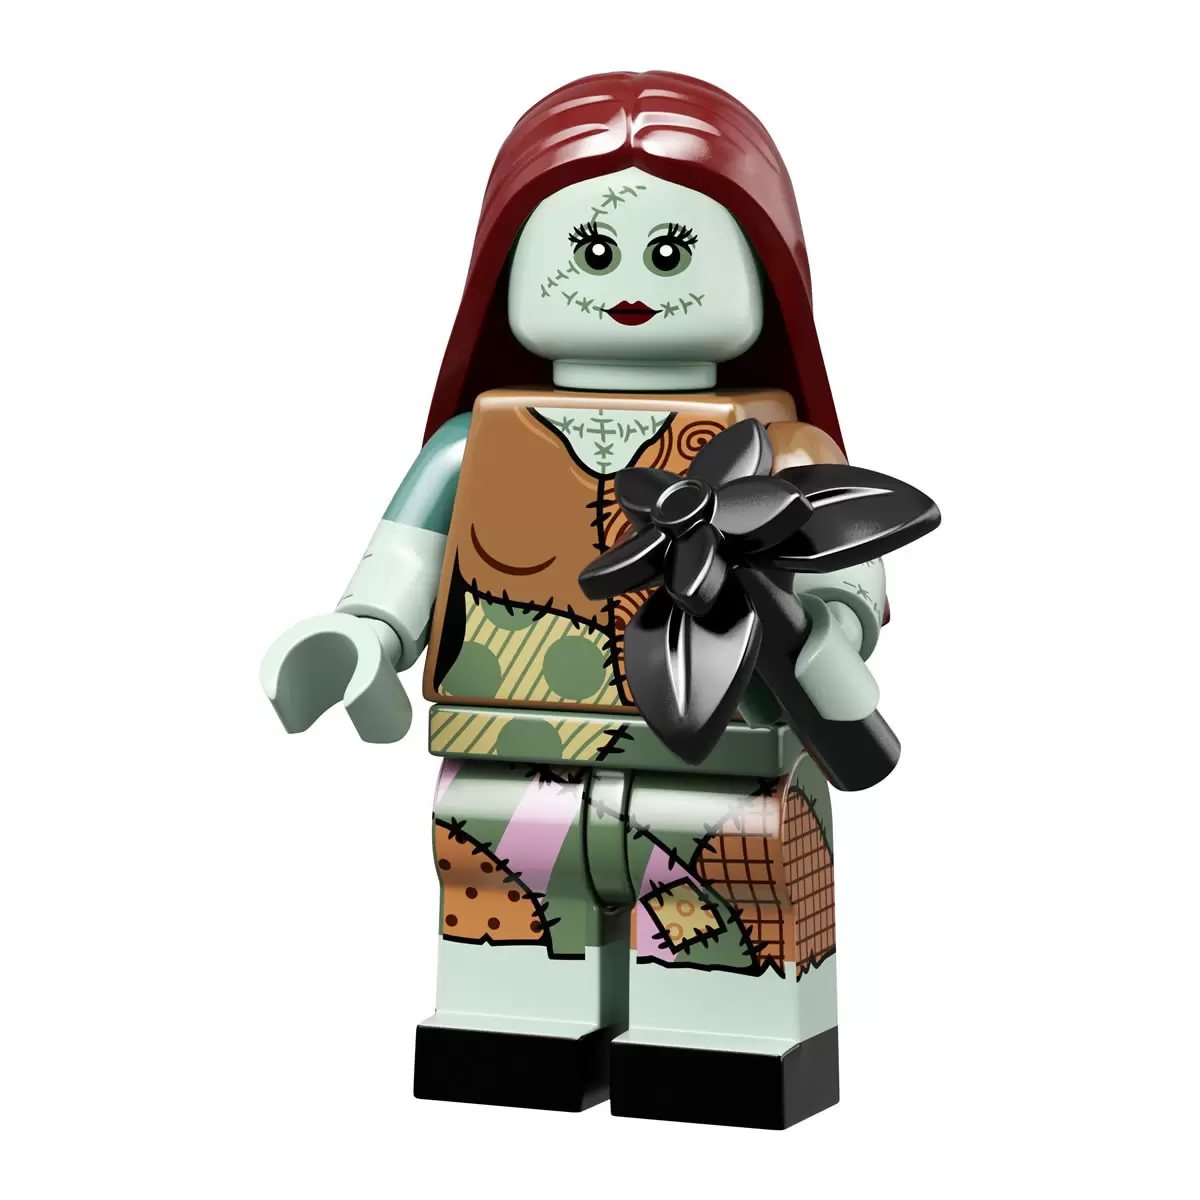 LEGO Minifigures Disney Series 2 - Sally